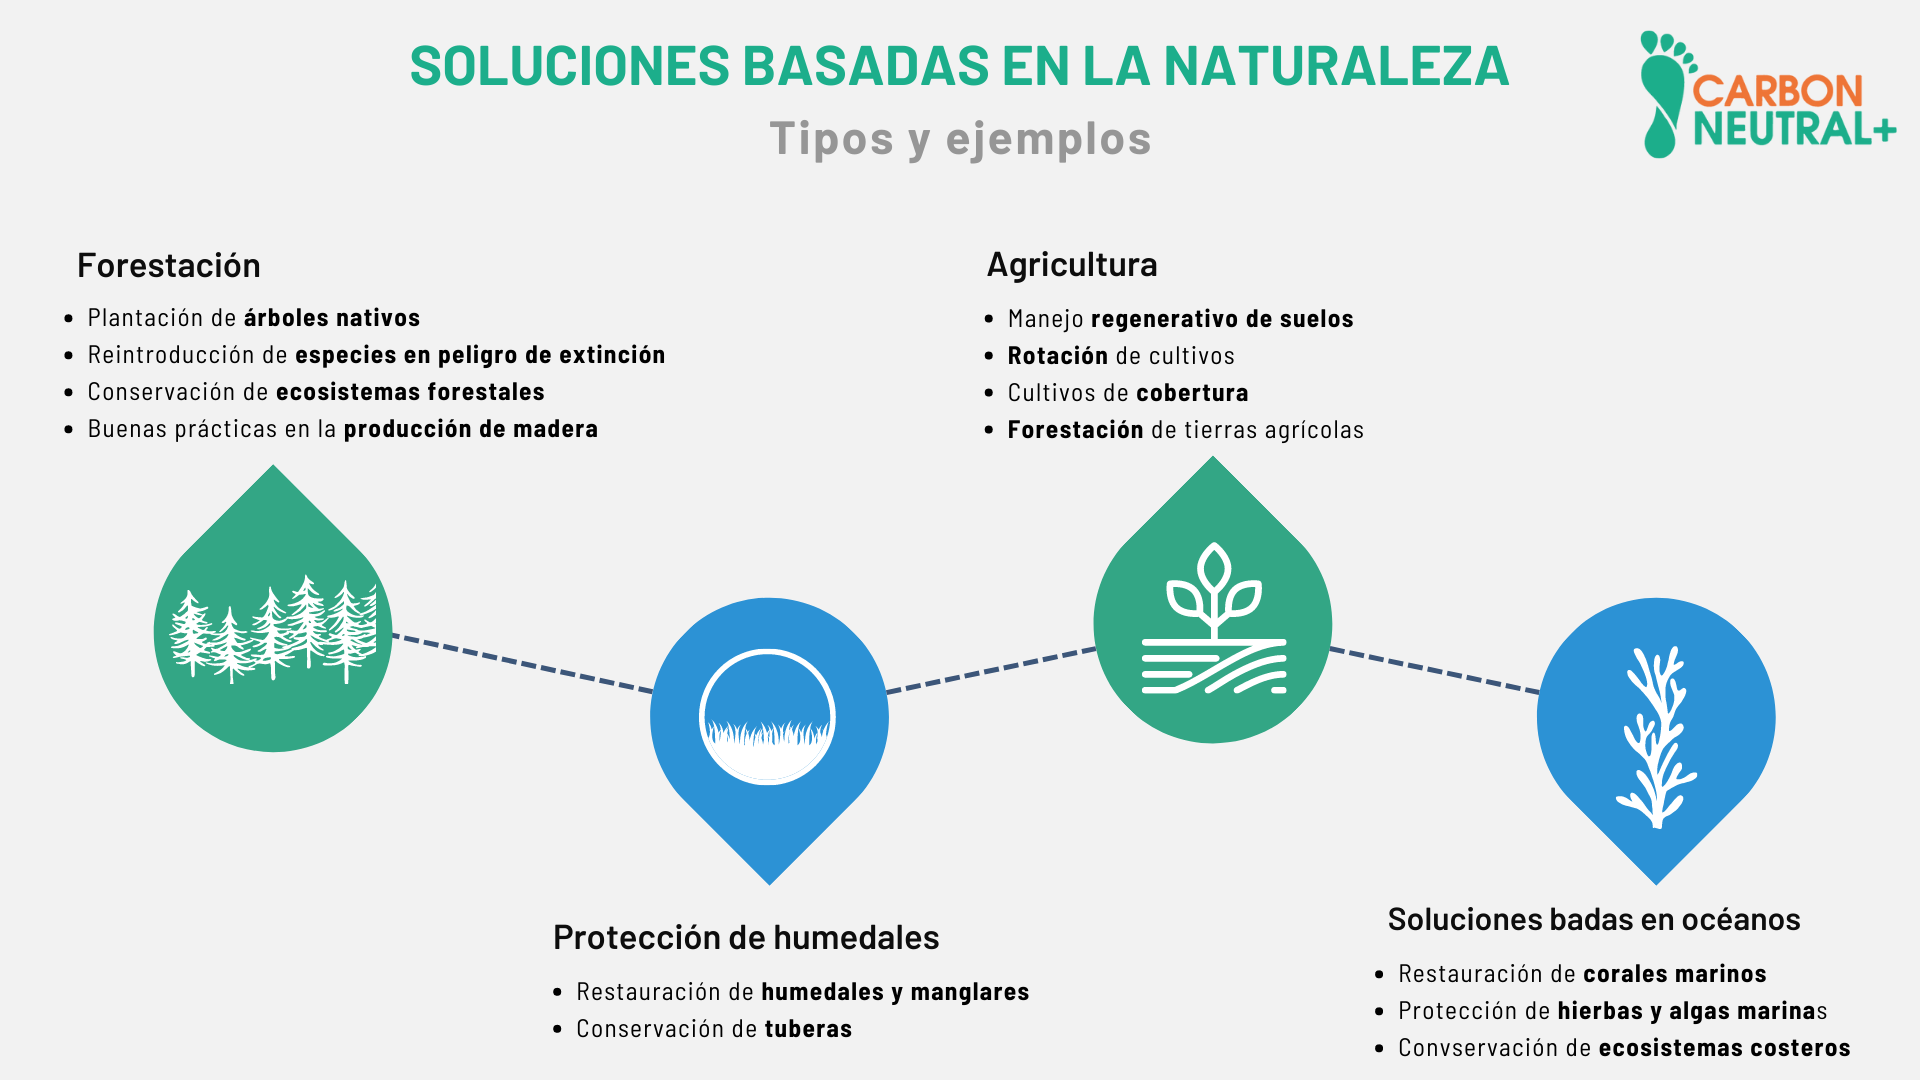 Imagen 1: Resumen de tipos y ejemplos de soluciones basadas en la naturaleza 